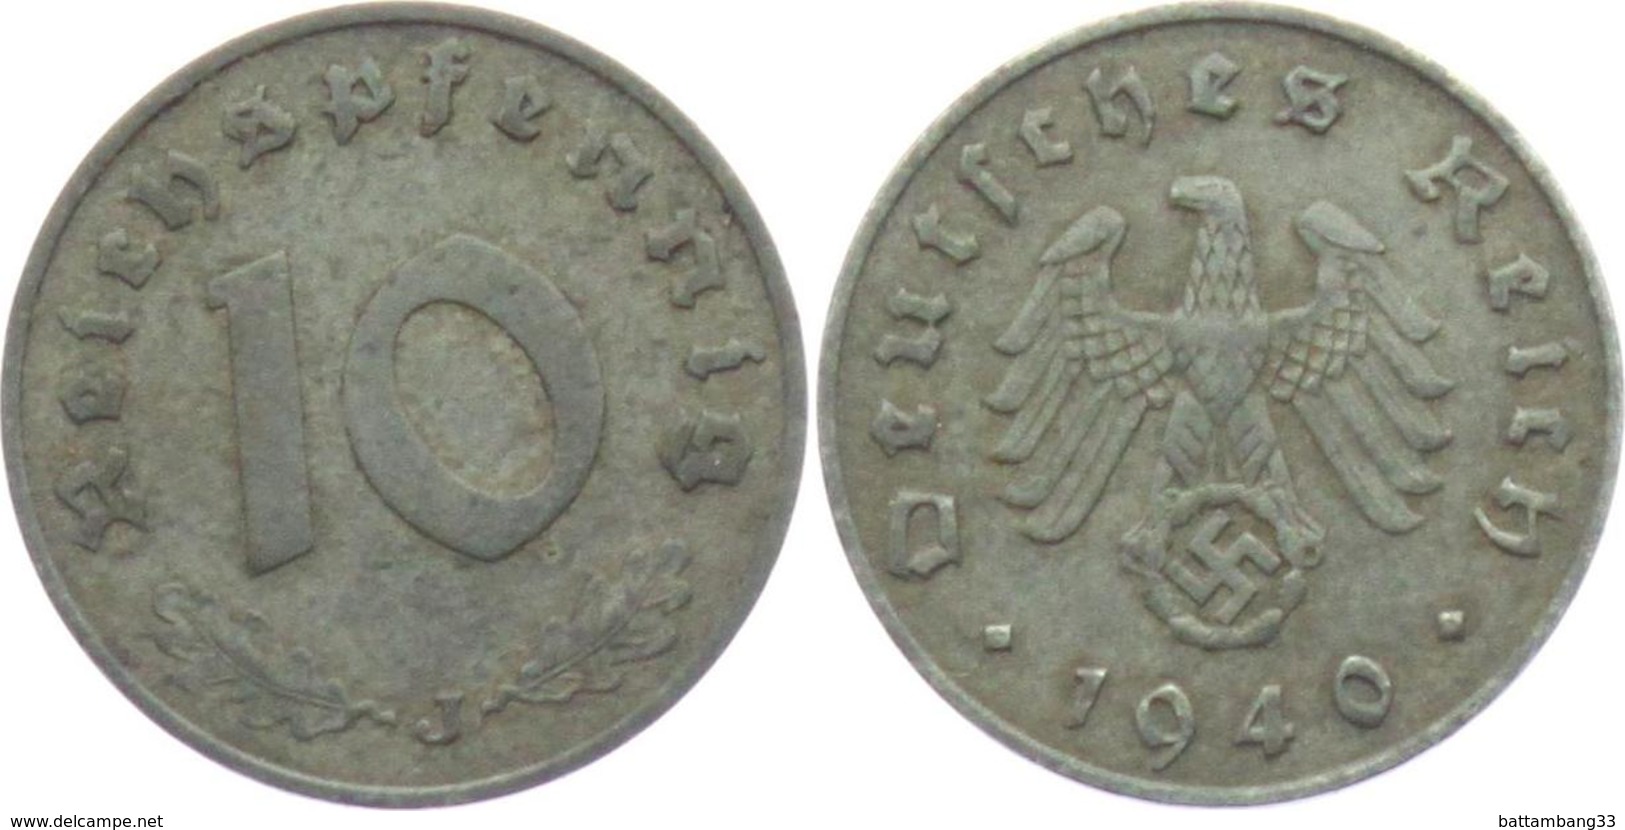 10 REICHPFENNIG - 10 Reichspfennig